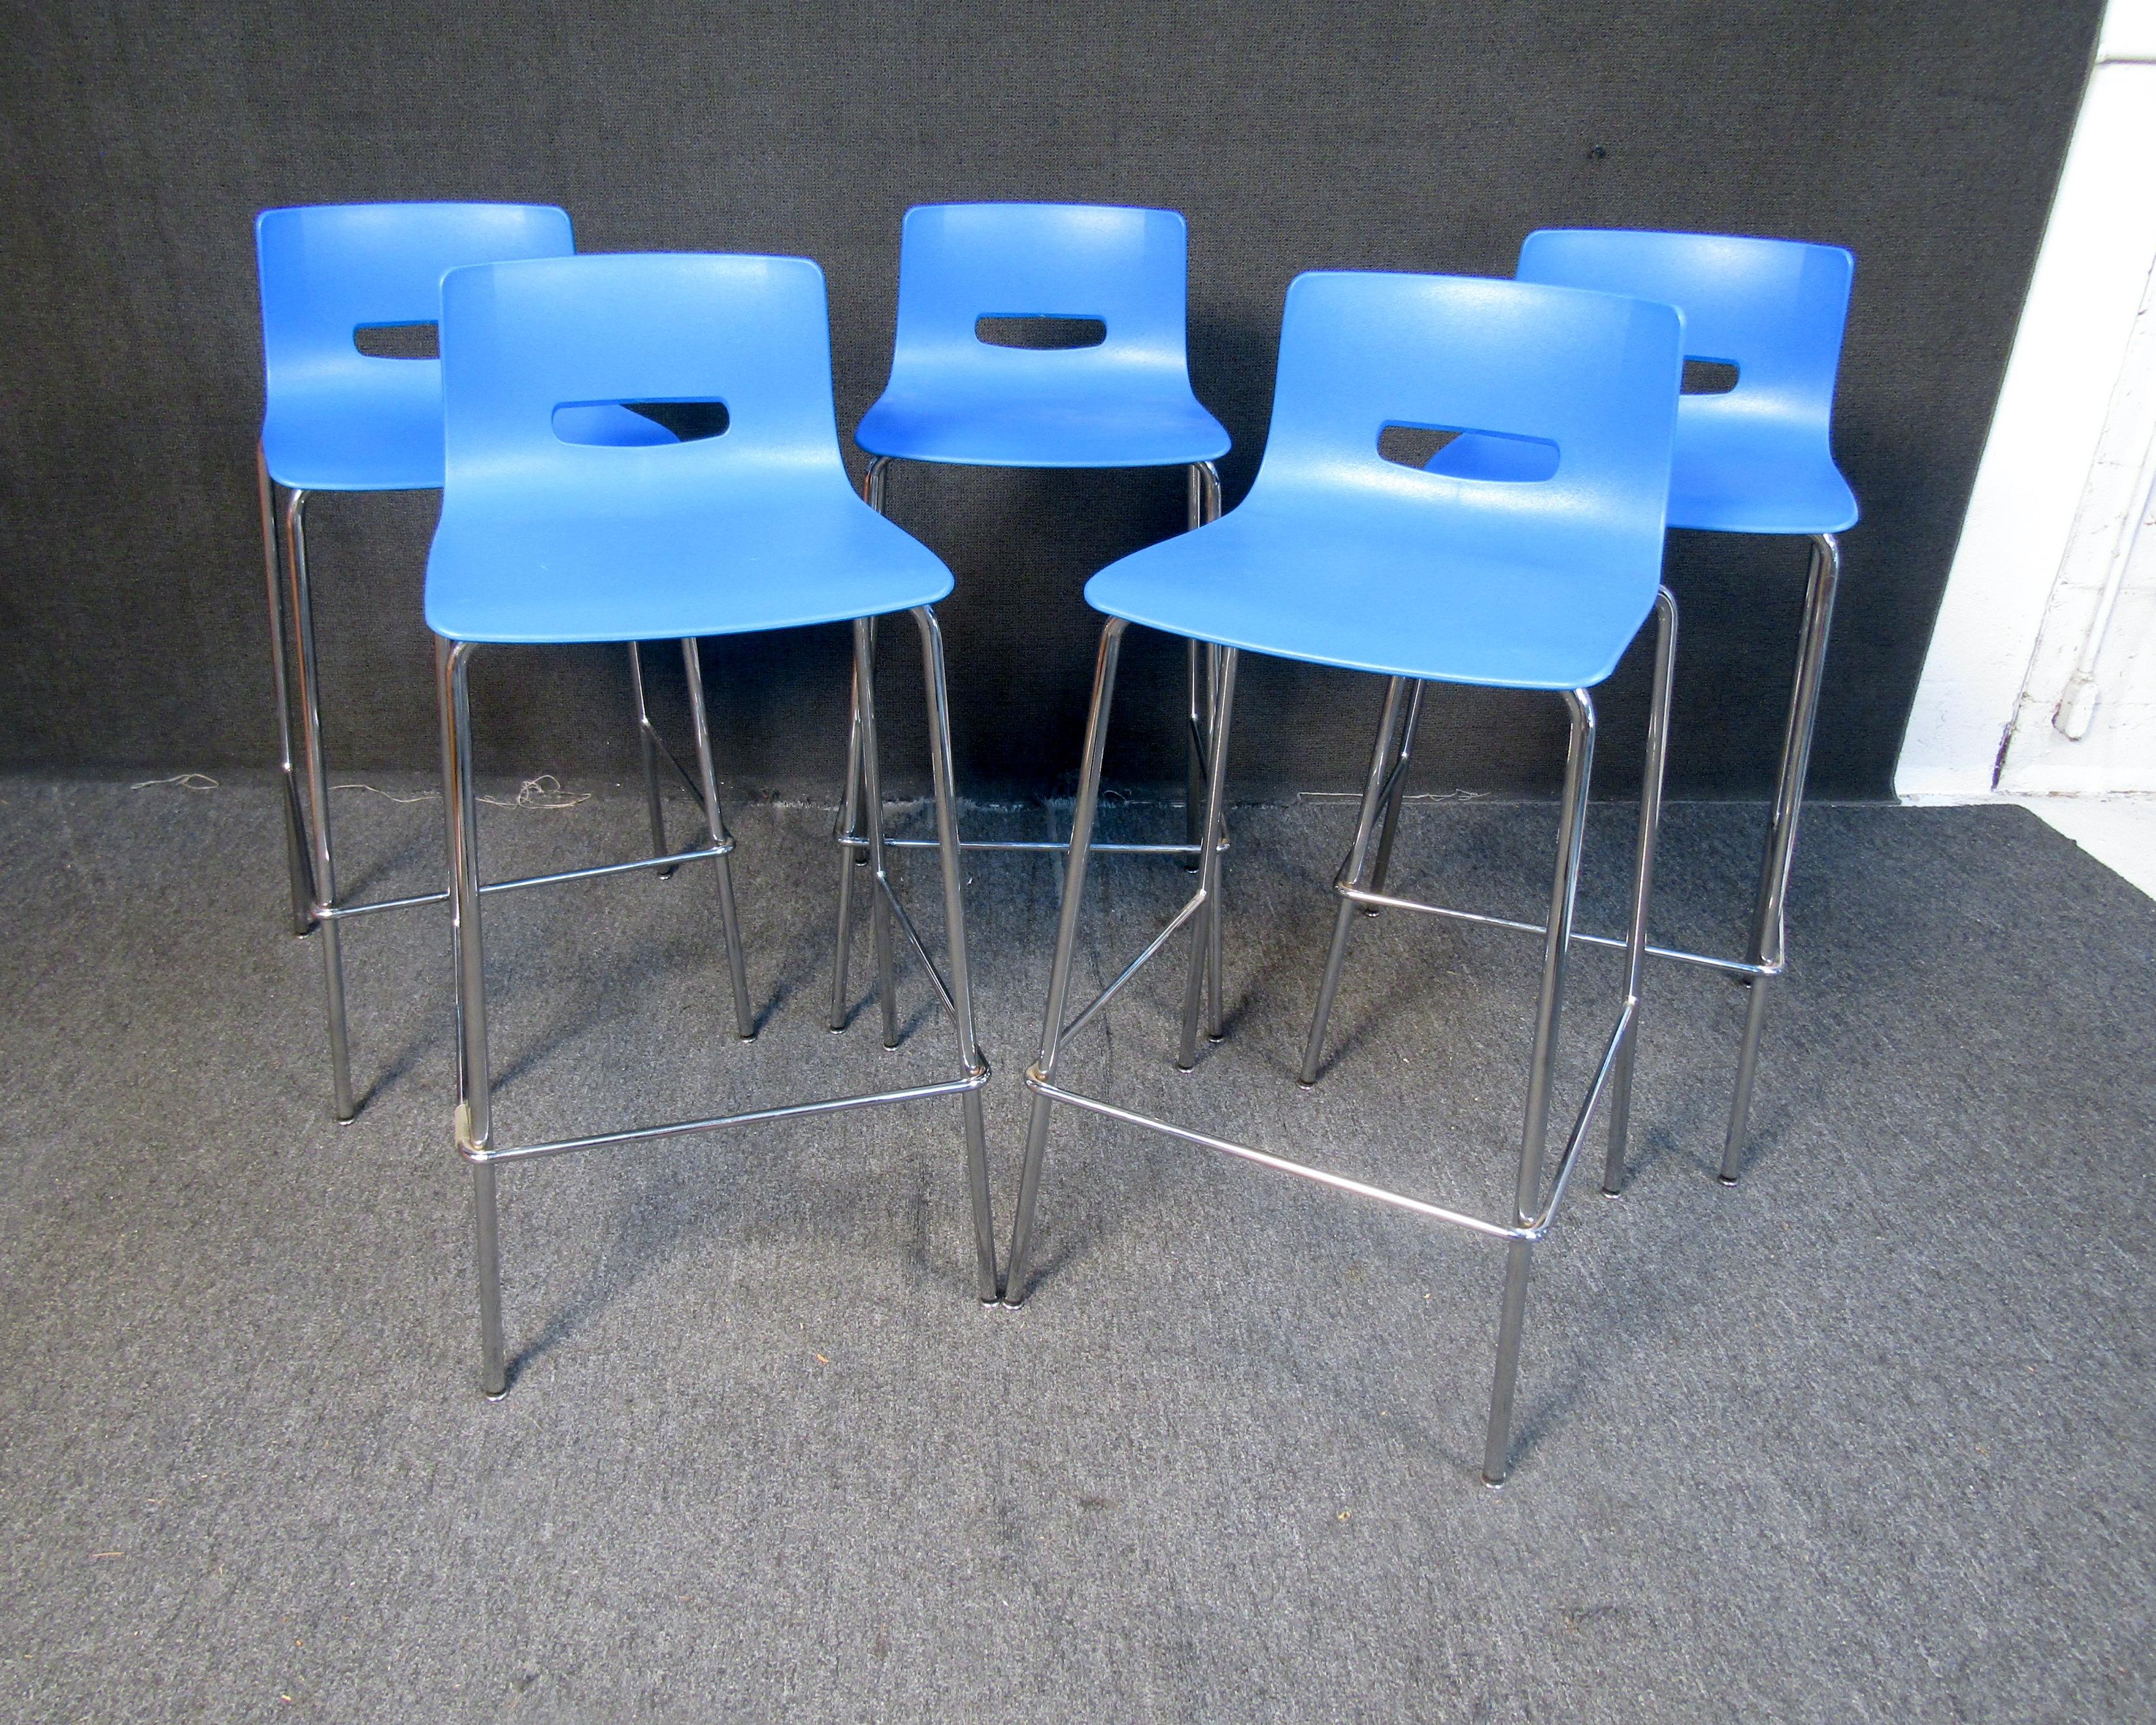 Satz von (5) eleganten zeitgenössischen blauen Barhockern. Diese Stühle verfügen über konturierte Rückenlehnen, hohe Metallbeine und Fußstützen. Wenn Sie eine Bar oder einen Stehtisch haben, der ein modernes Hockerset braucht, könnten diese Hocker